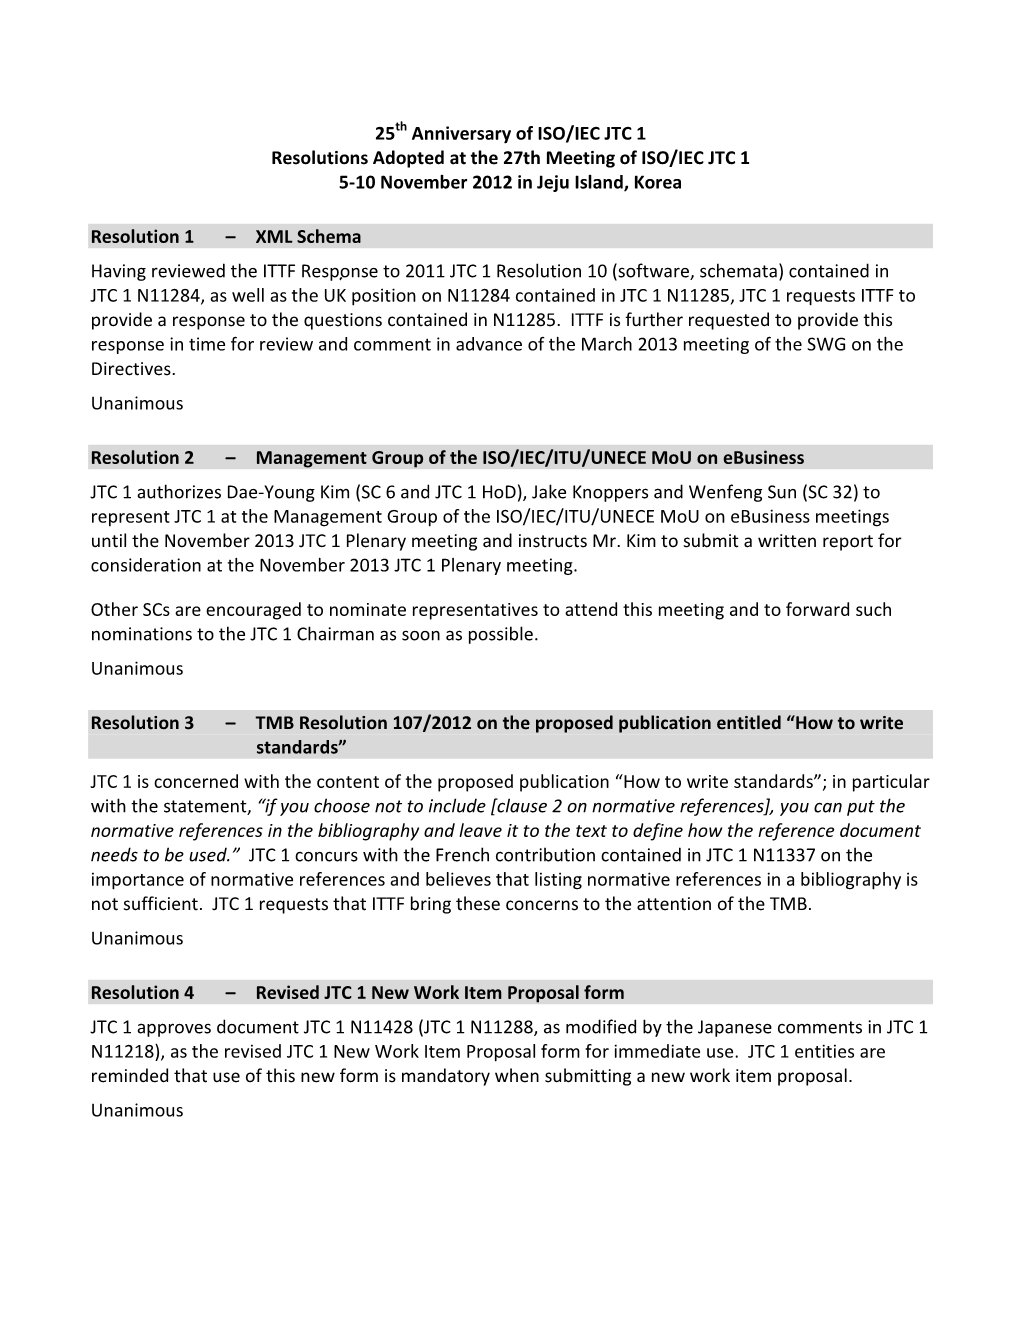 JTC 1 November Resolutions